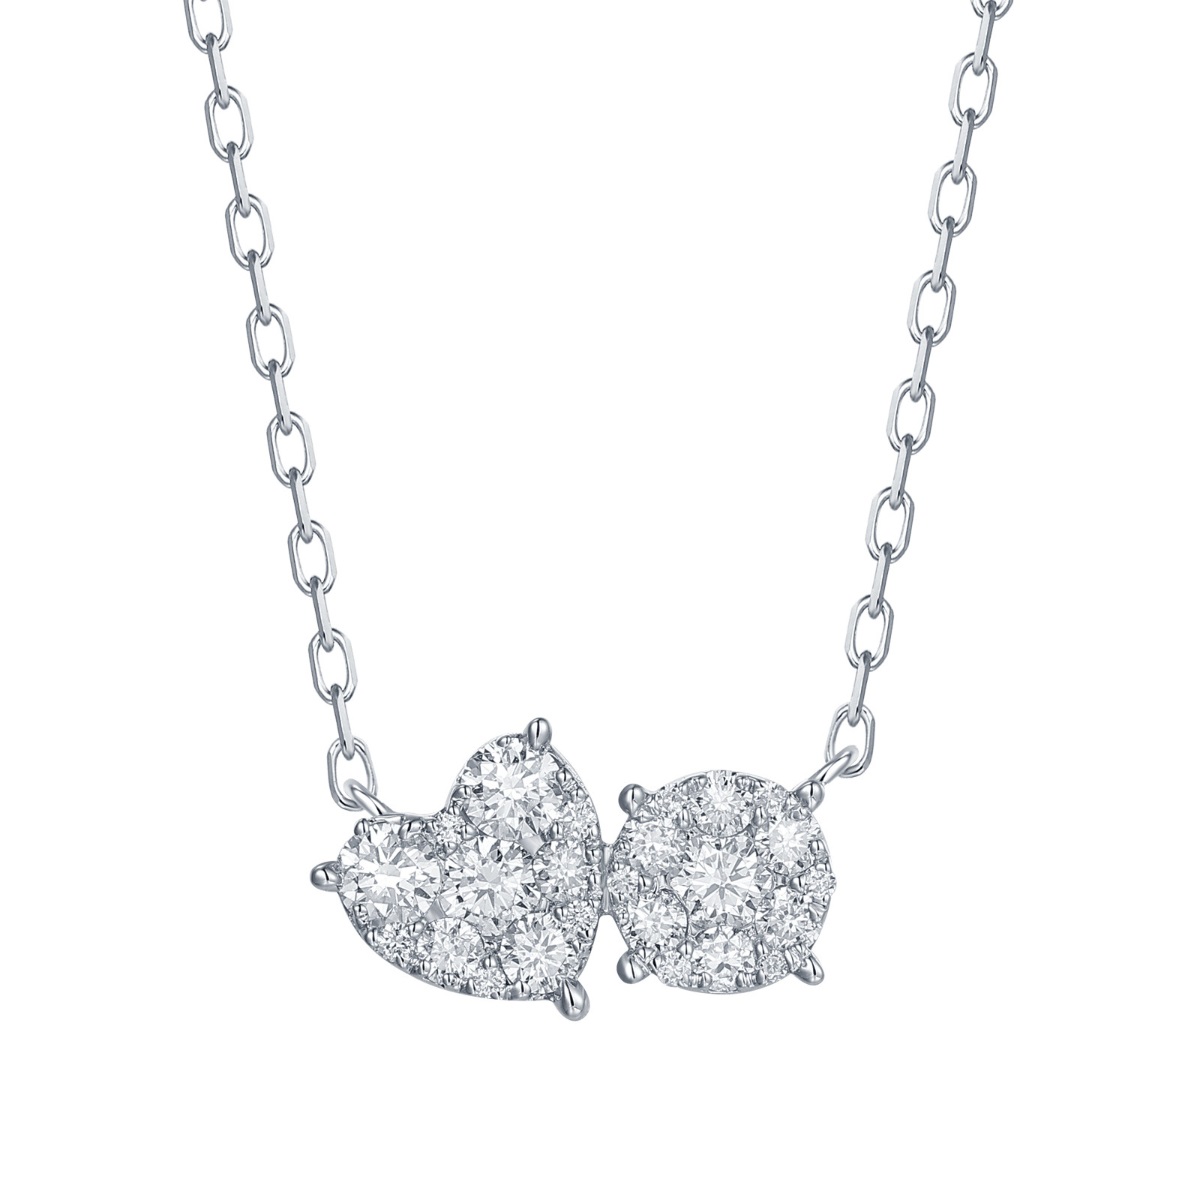 NL37091WHT – 18K White Gold Diamond Necklace, 0.43 TCW